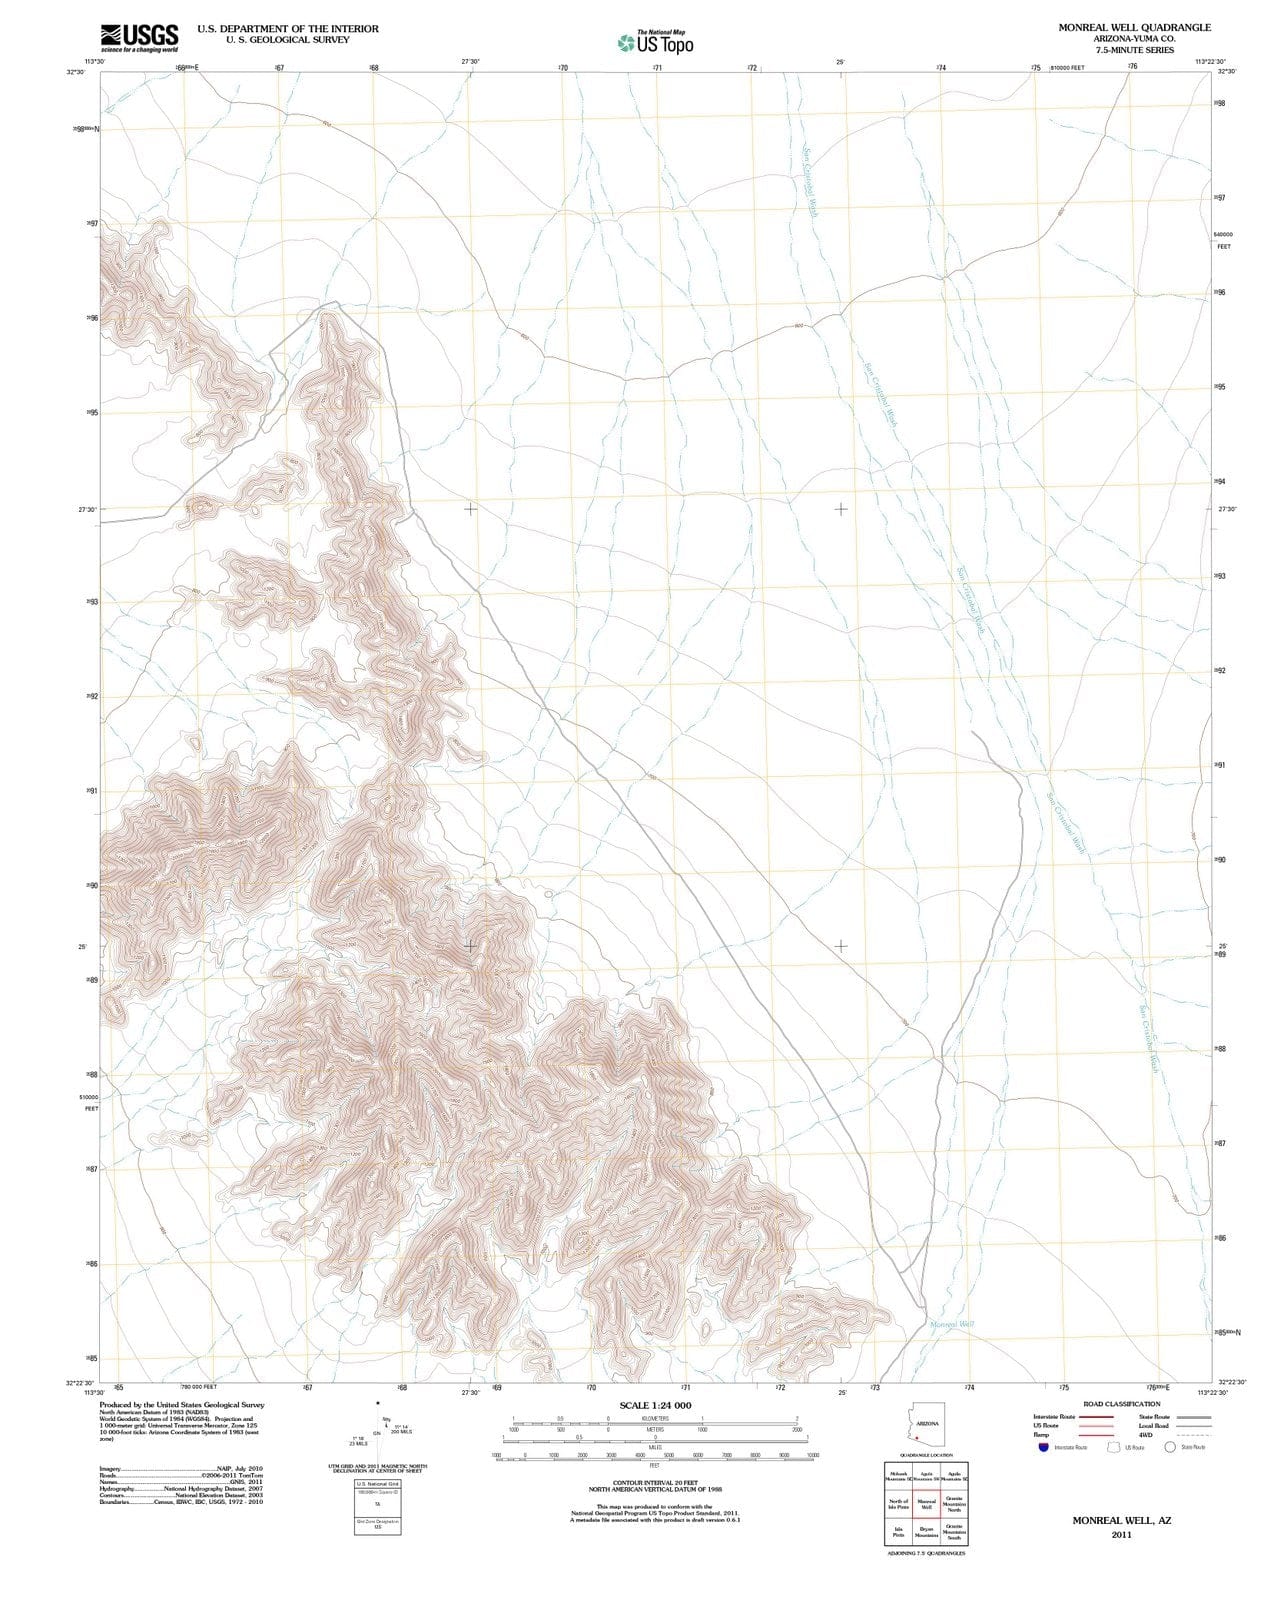 2011 Monreal Well, AZ - Arizona - USGS Topographic Map